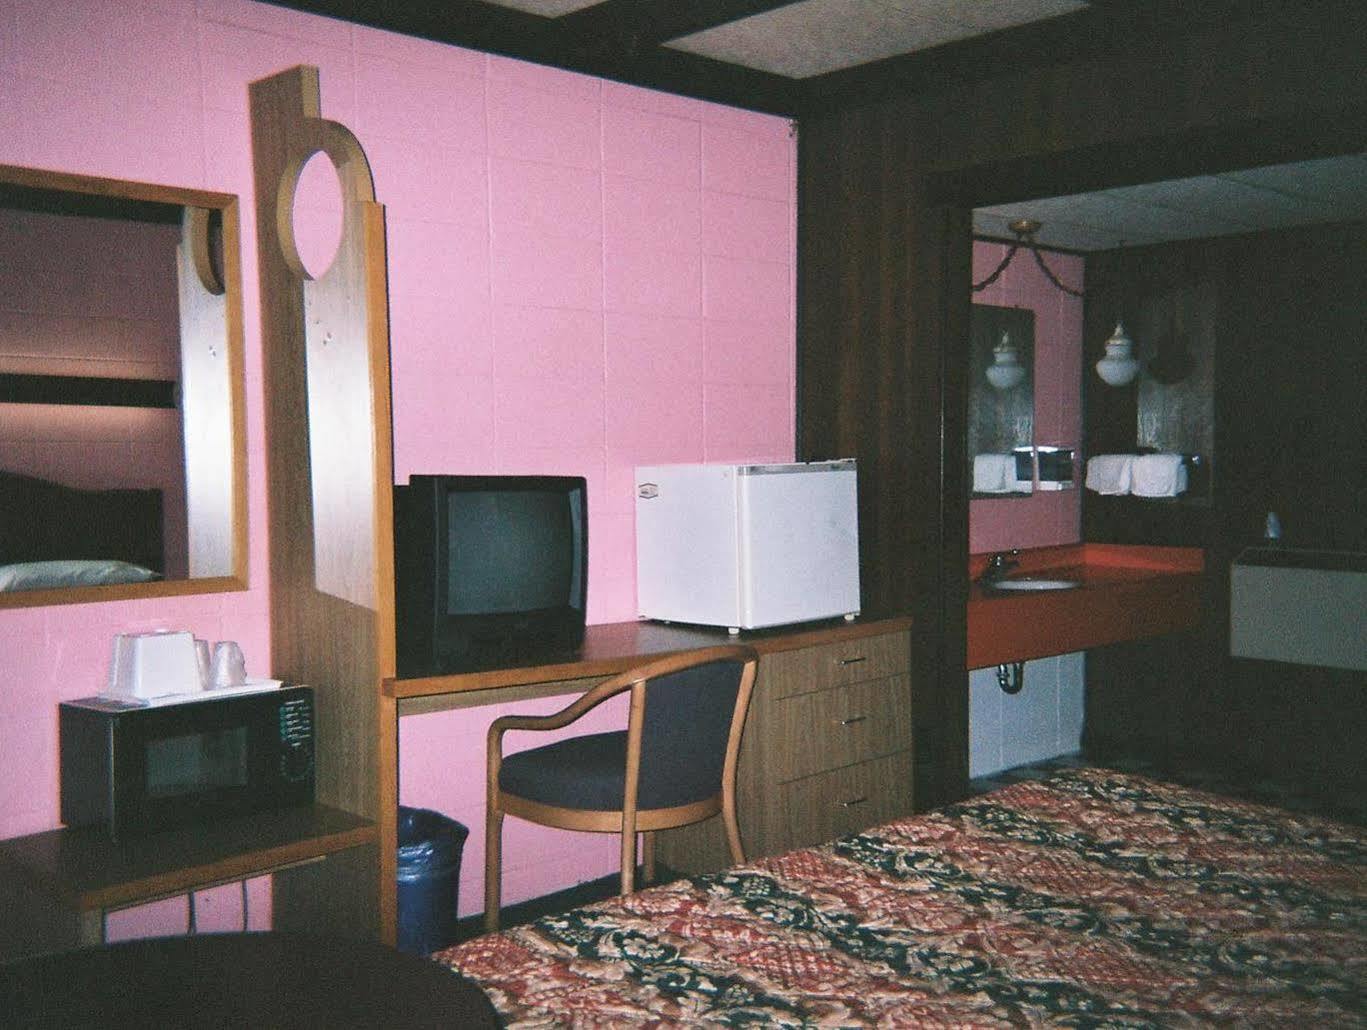 Motel Reedsburg Luaran gambar